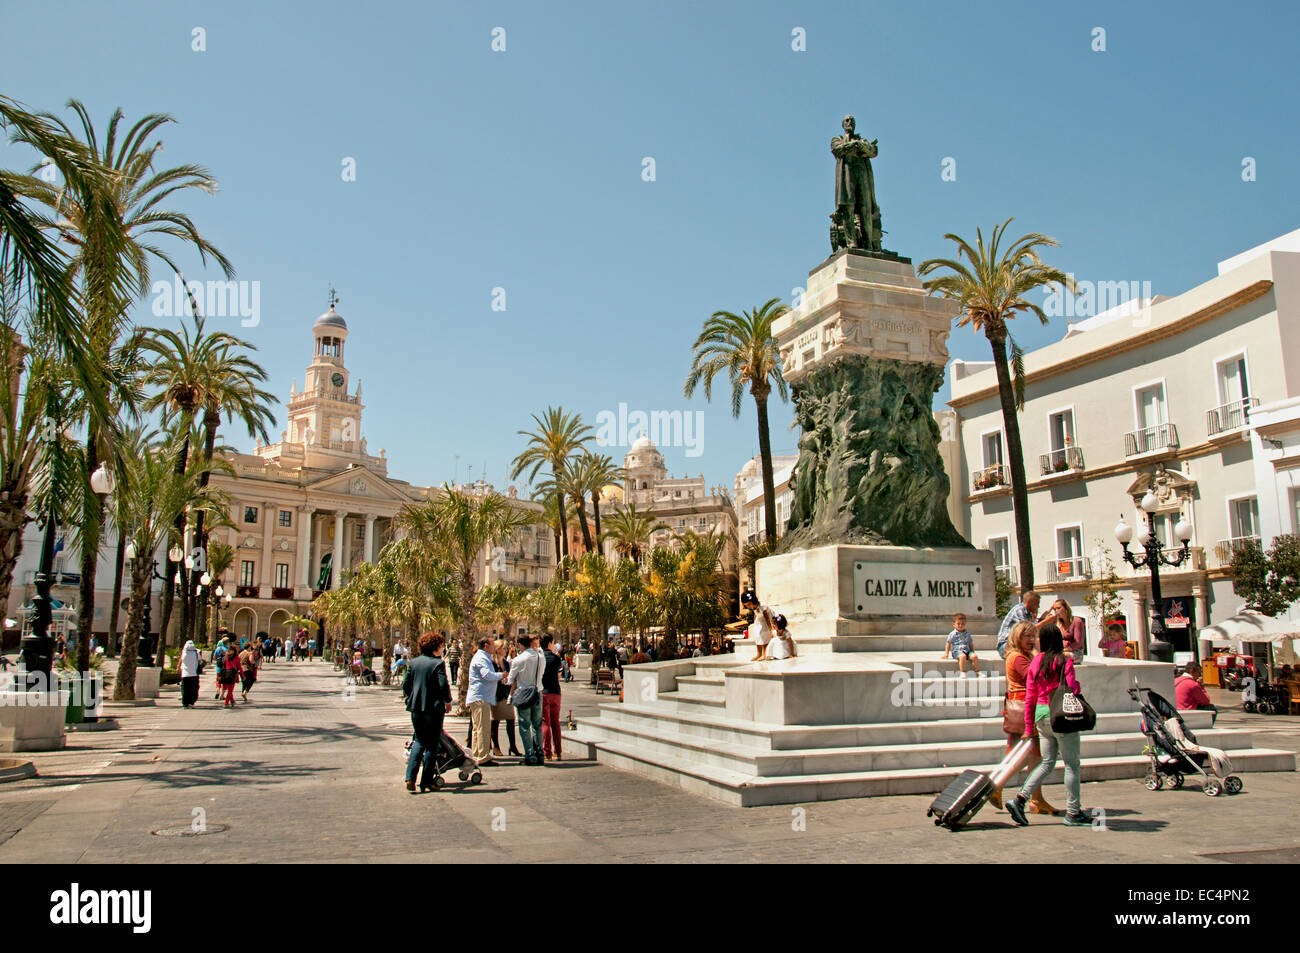 La cattedrale di Cadice piazza (Plaza de la Catedral) Andalusia Spagna spagnolo ( Cadice un Moret ) Foto Stock